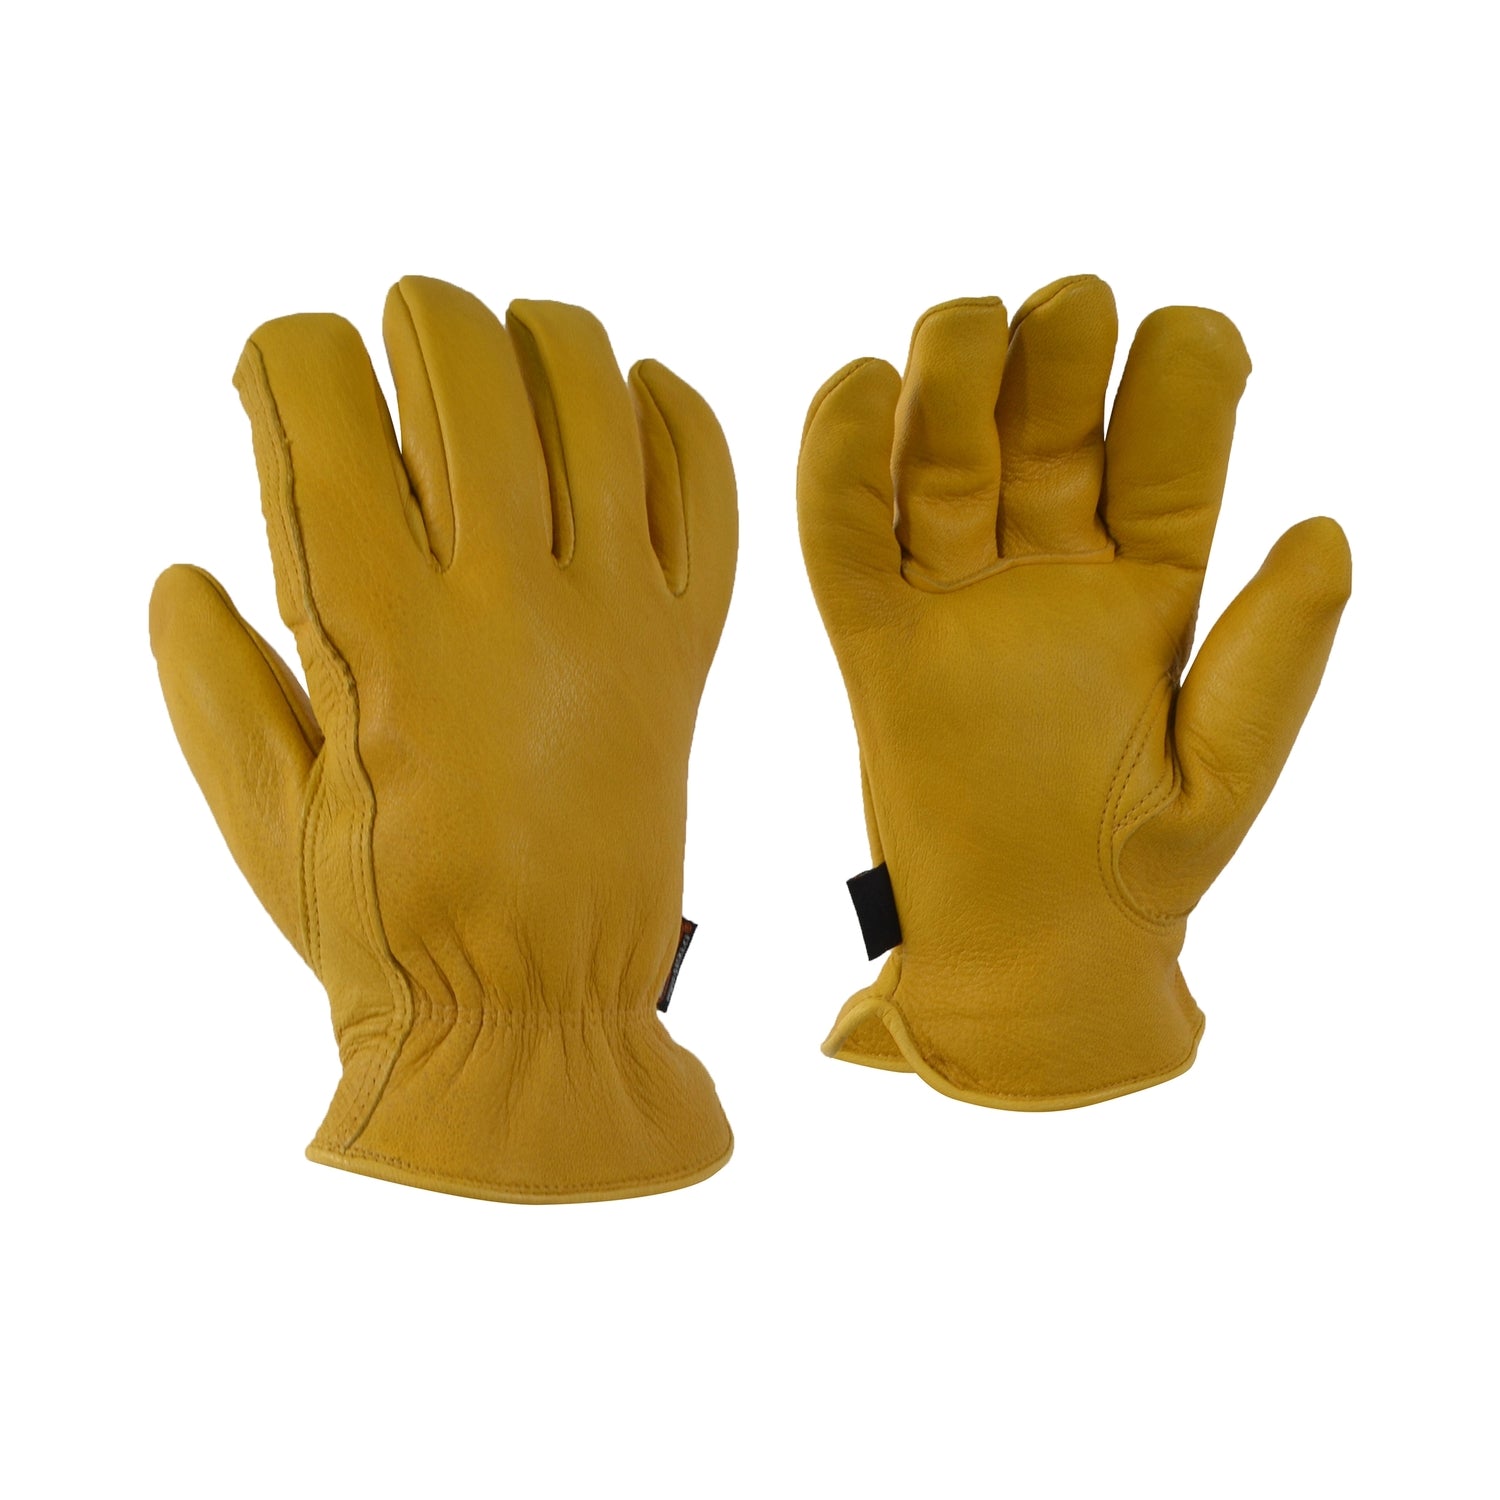 Deerskin Work Gloves - 10-4 JOB